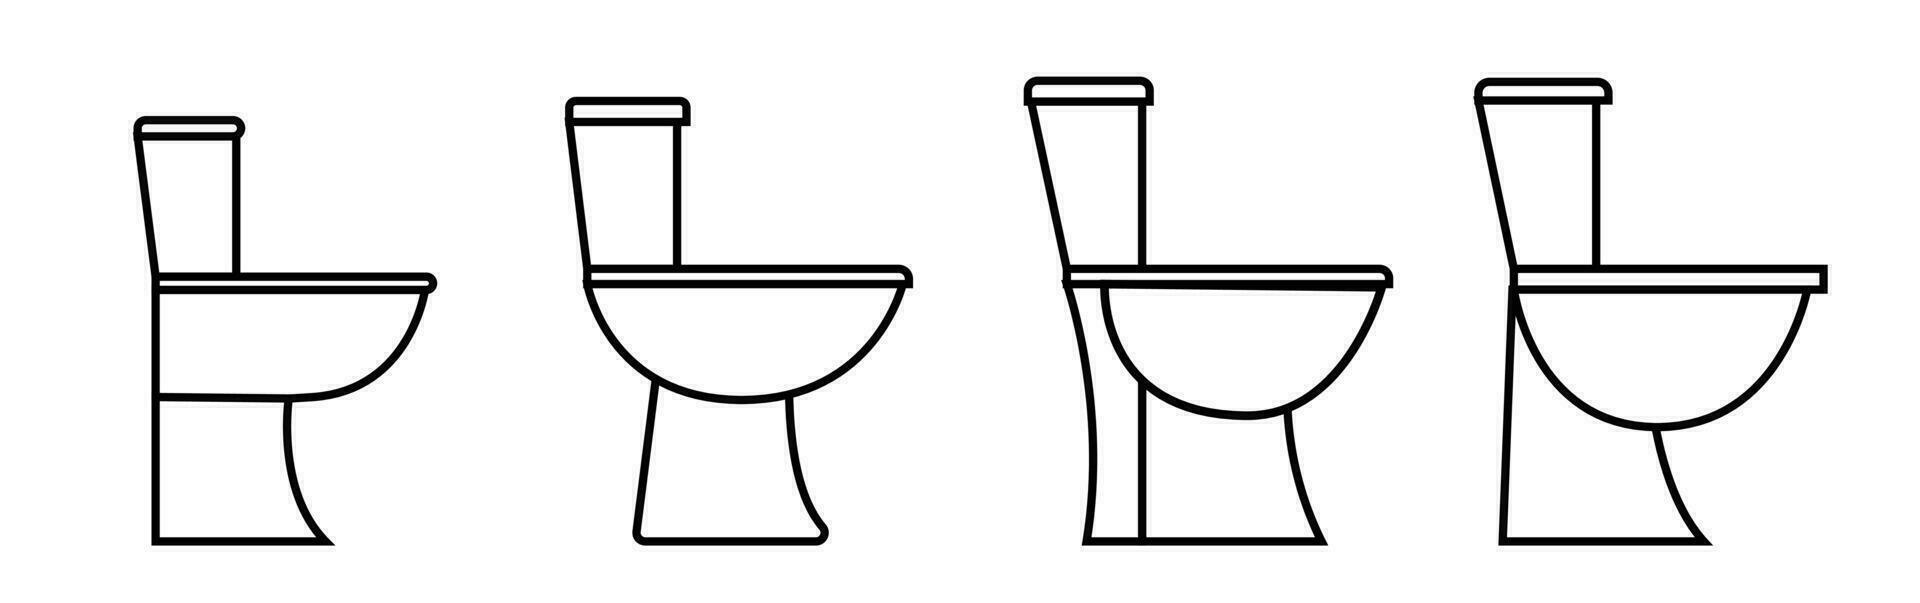 Toilette Symbol Bidet einstellen Vektor einfach